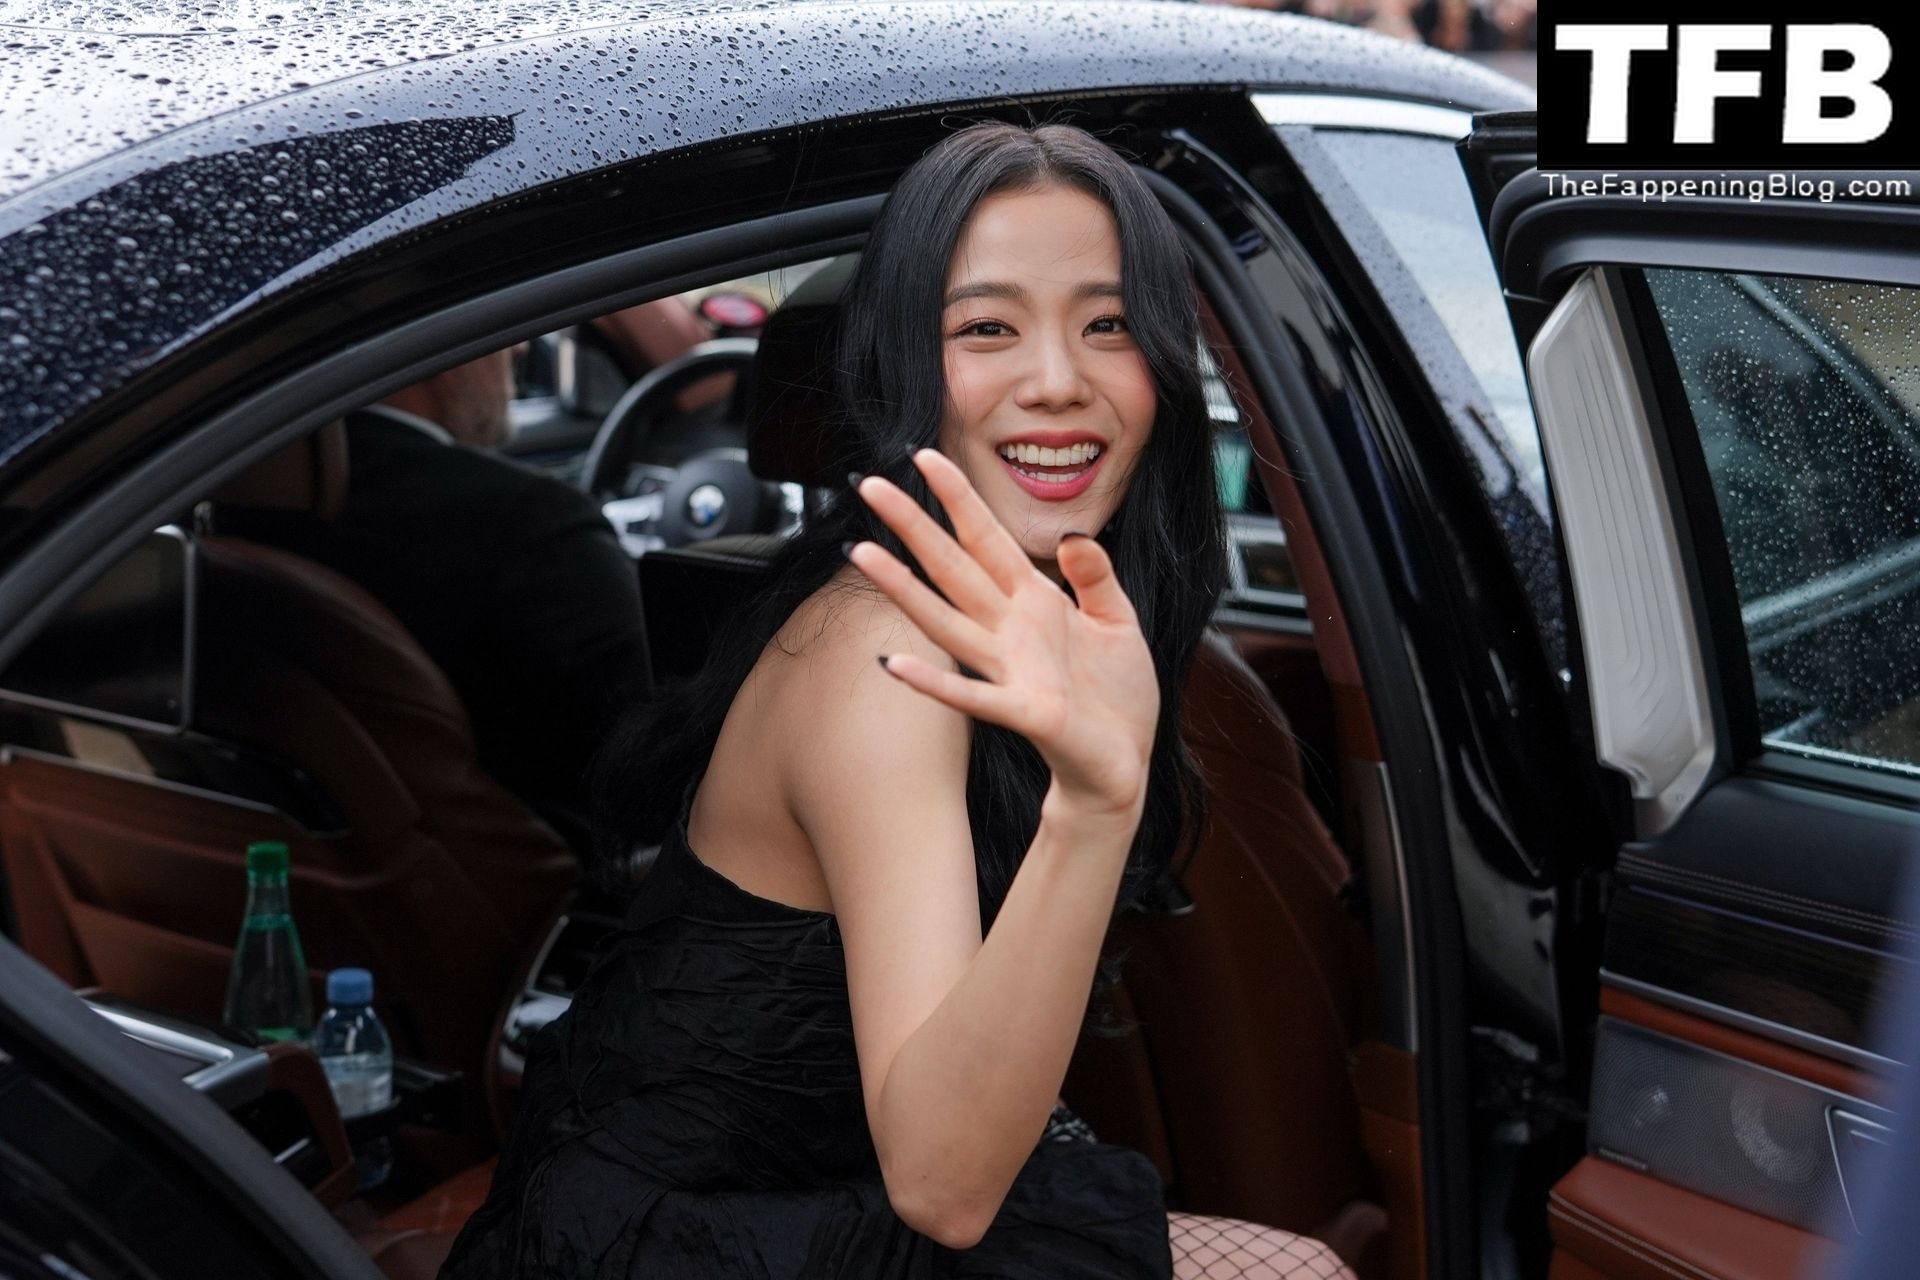 Leggy Kim Ji-soo Attends the Dior Fashion Show in Paris (39 Photos)